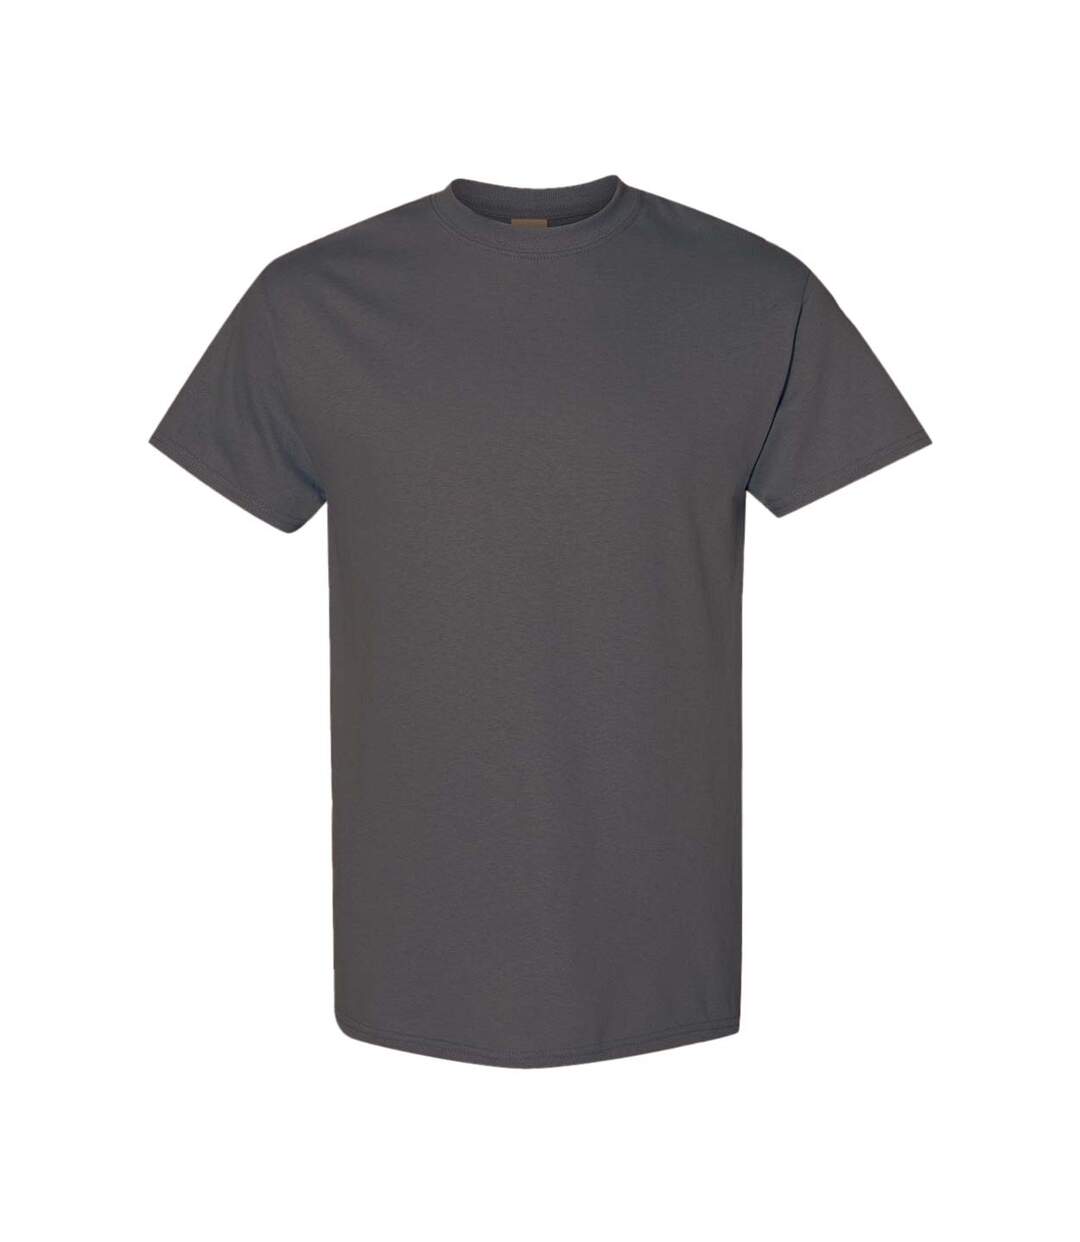 Gildan – Lot de 5 T-shirts manches courtes - Hommes (Anthracite) - UTBC4807